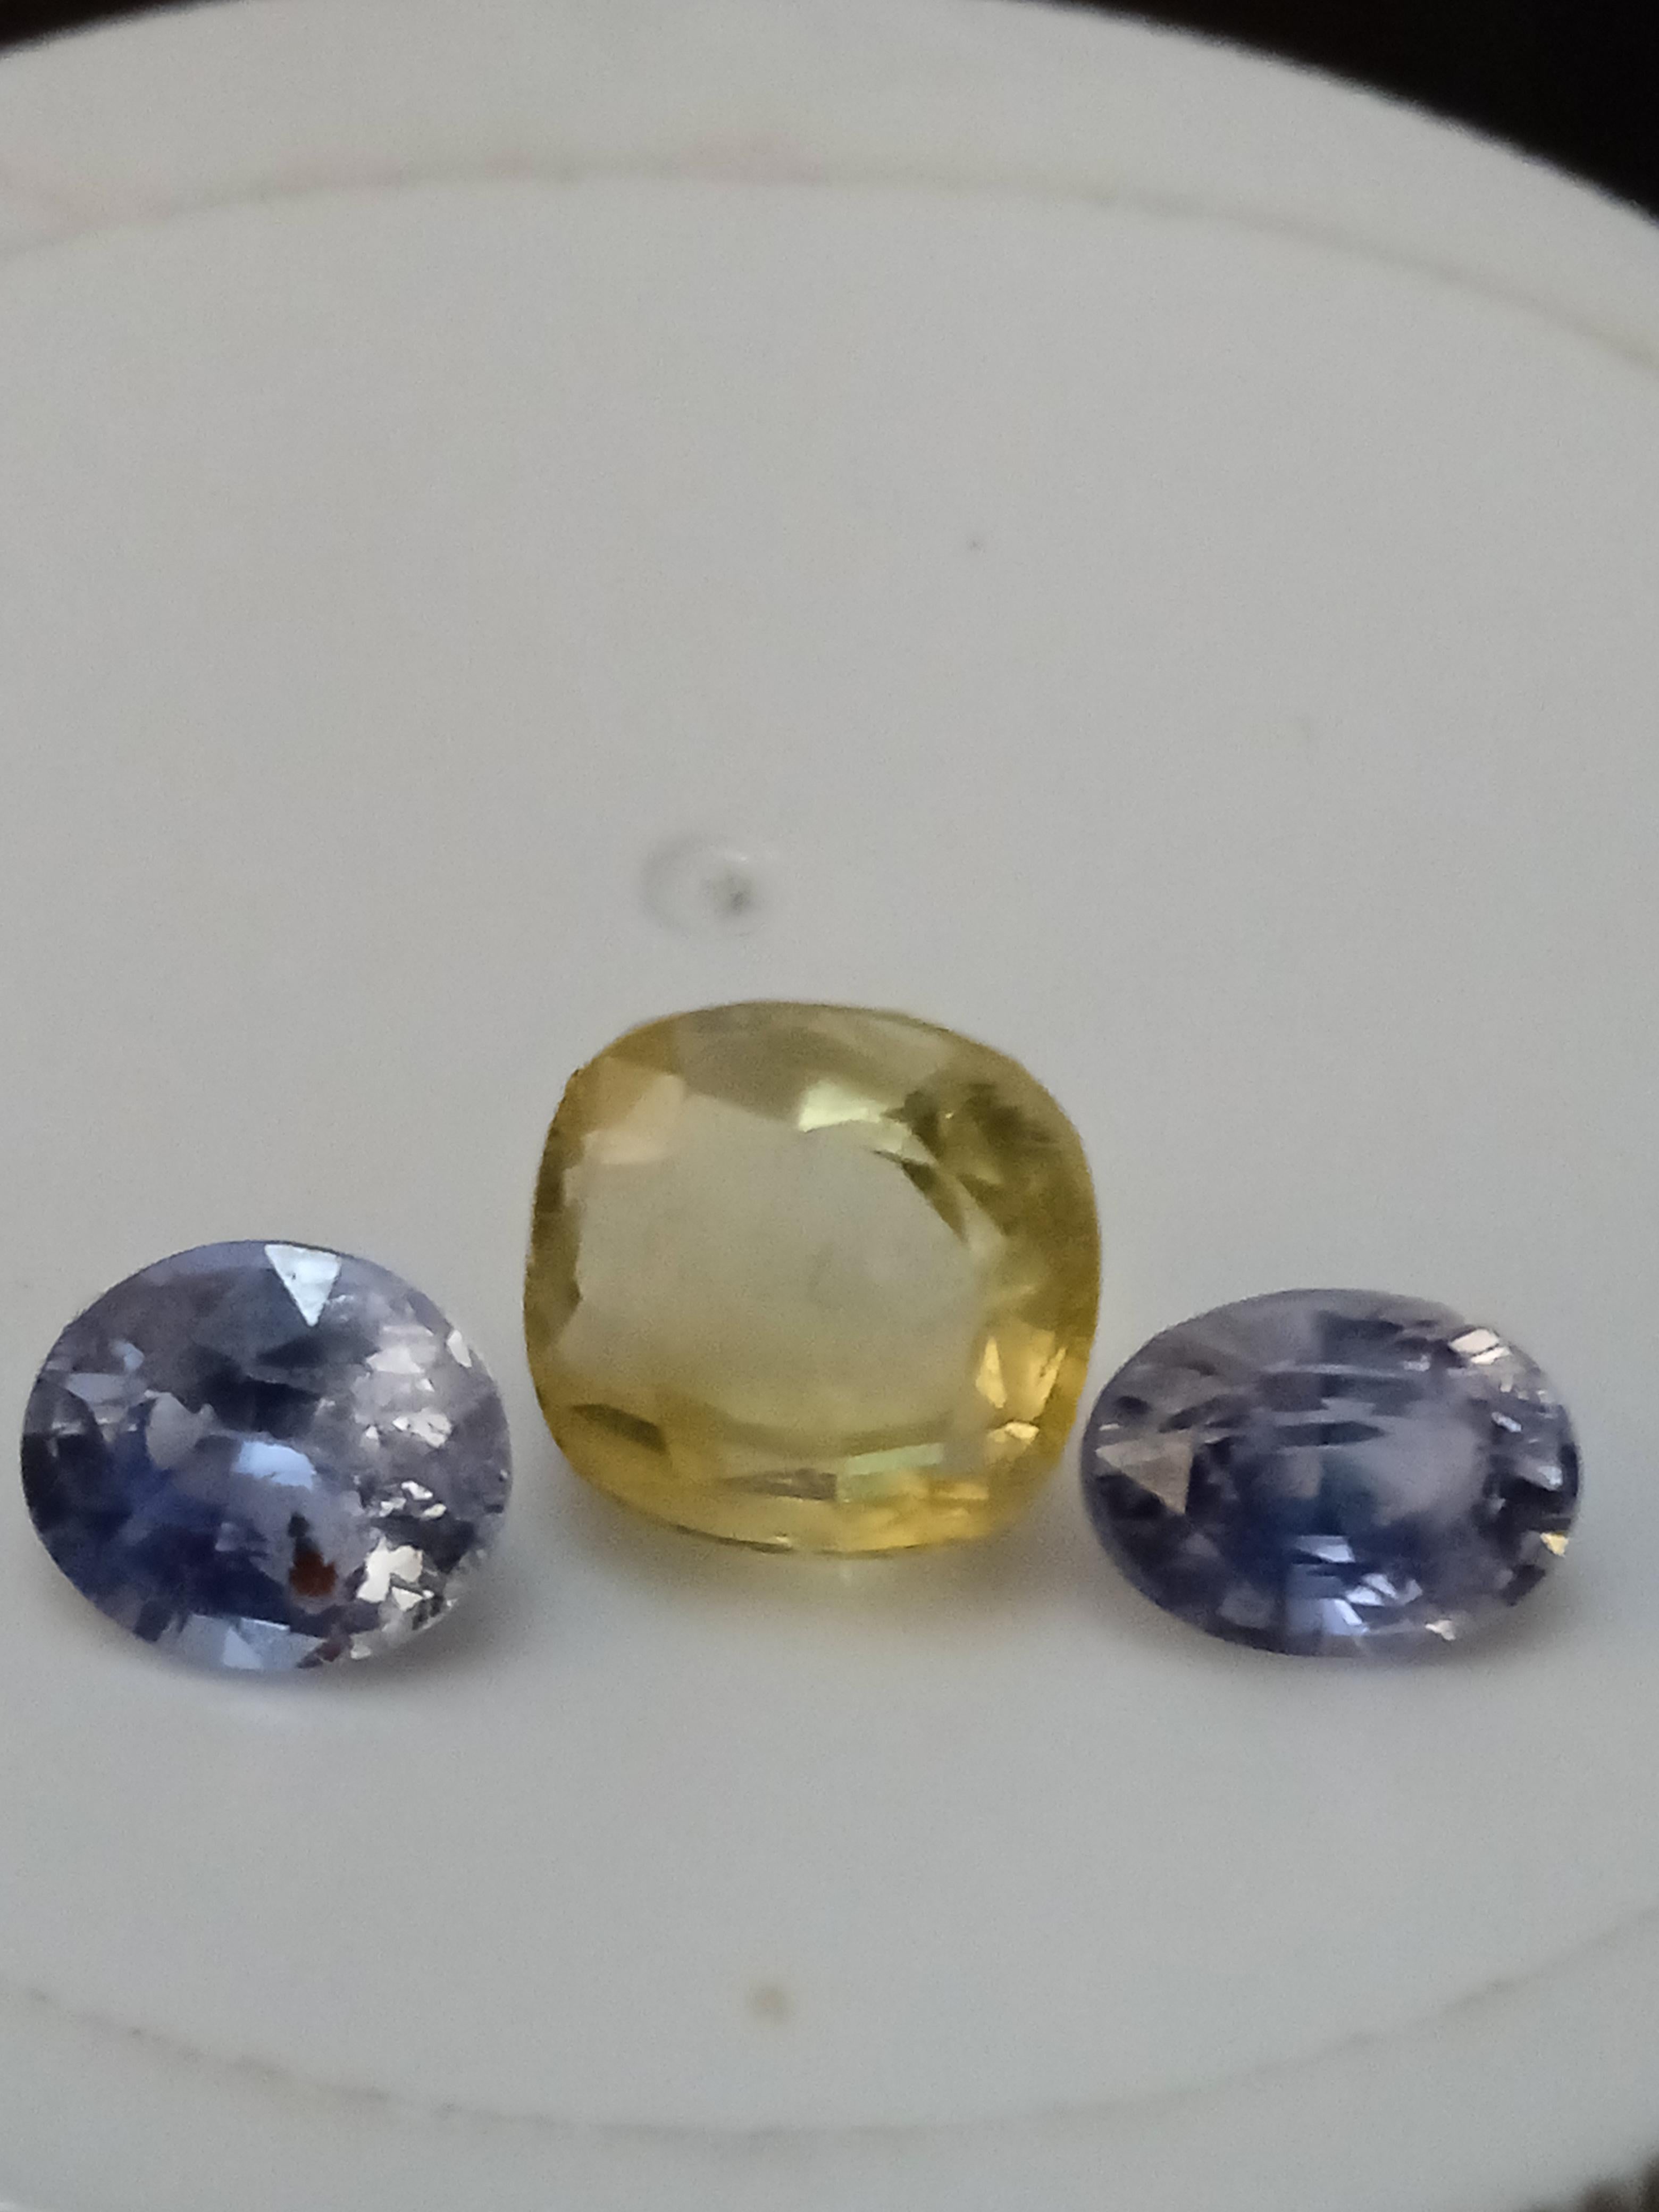 Verleihen Sie Ihrer Schmucksammlung einen Hauch von Eleganz mit diesem atemberaubenden 3-teiligen Set aus natürlichen blauen Saphiren und gelben Spinell-Edelsteinen. Das Set besteht aus drei Teilen, die jeweils einen kissenförmigen Edelstein von 3